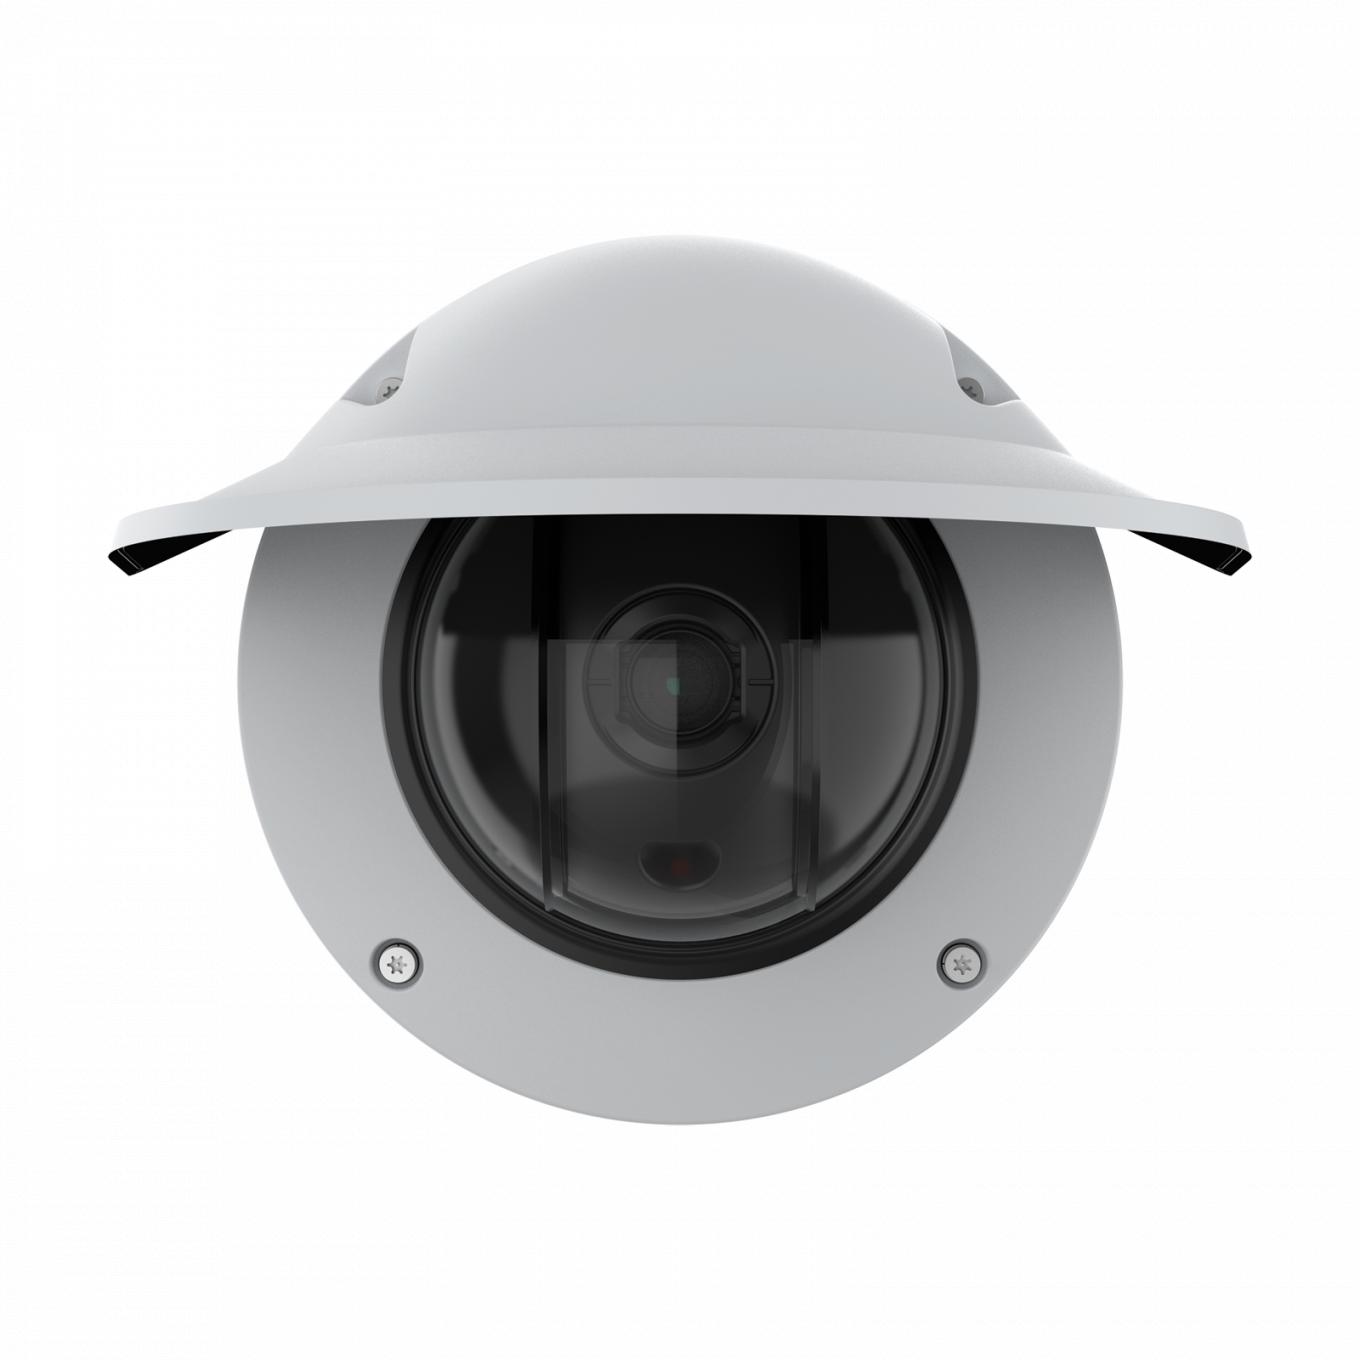 AXIS Q3536-LVE Dome Camera com proteção climática vista pela frente